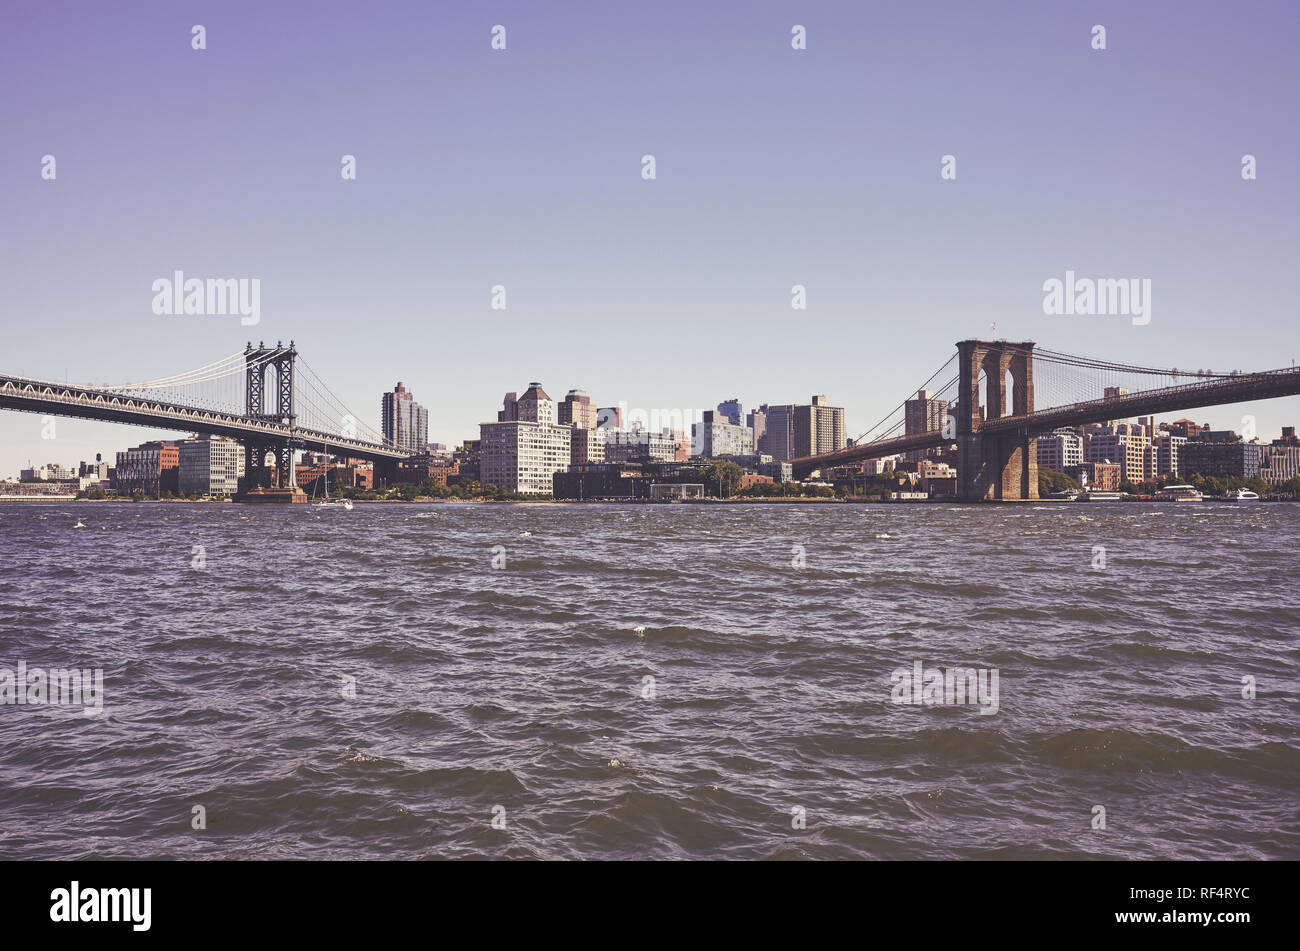 Brooklyn Borough zwischen zwei berühmten New Yorker Brücken, Manhattan Bridge und Brooklyn Bridge, retro Farbe getonte Bild, USA gesehen. Stockfoto